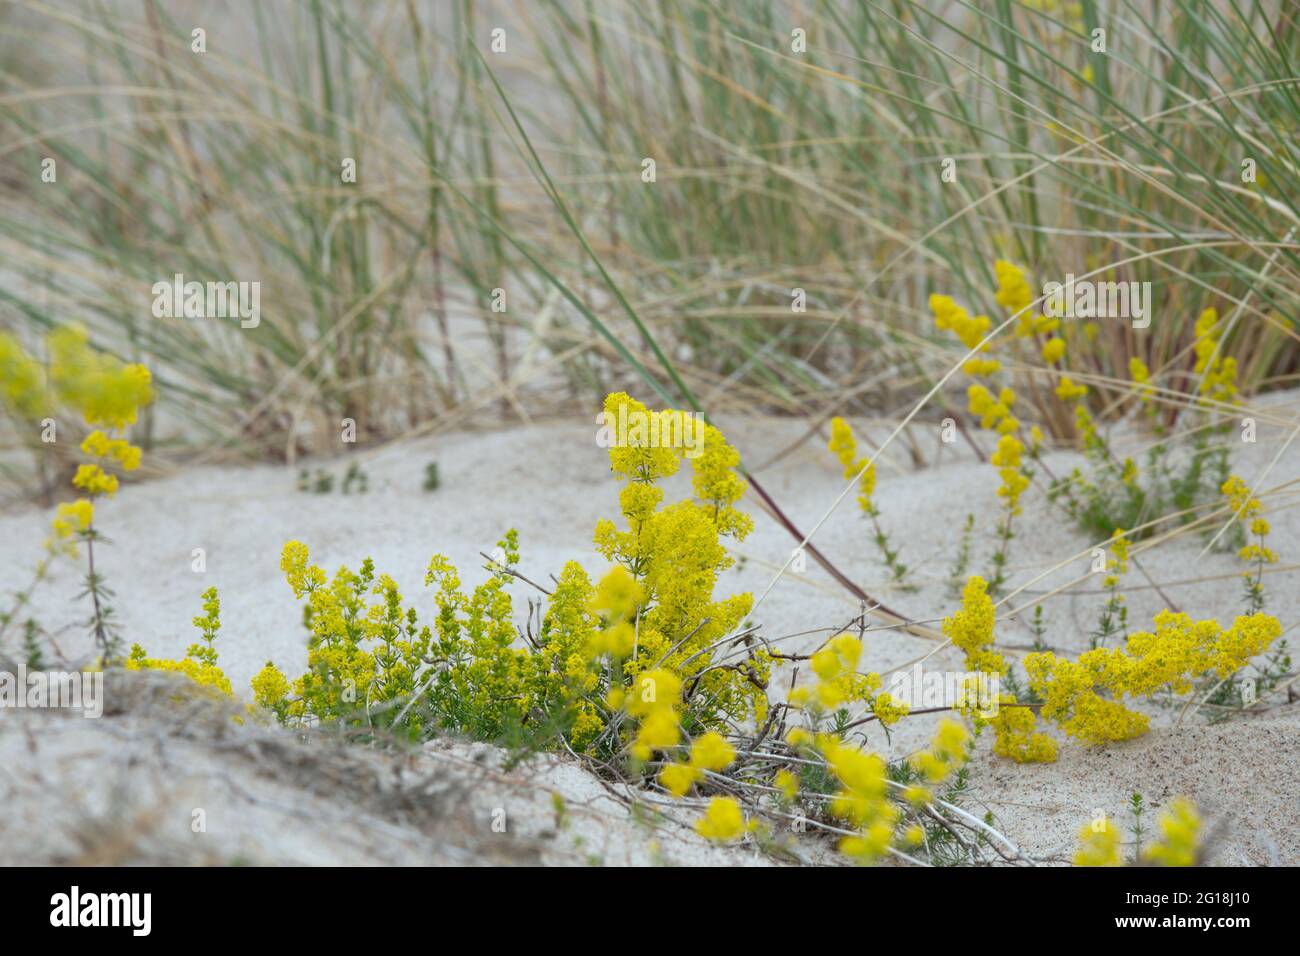 Yellow bedstraw, Galium verum blooming in dry, sandy environment Stock Photo